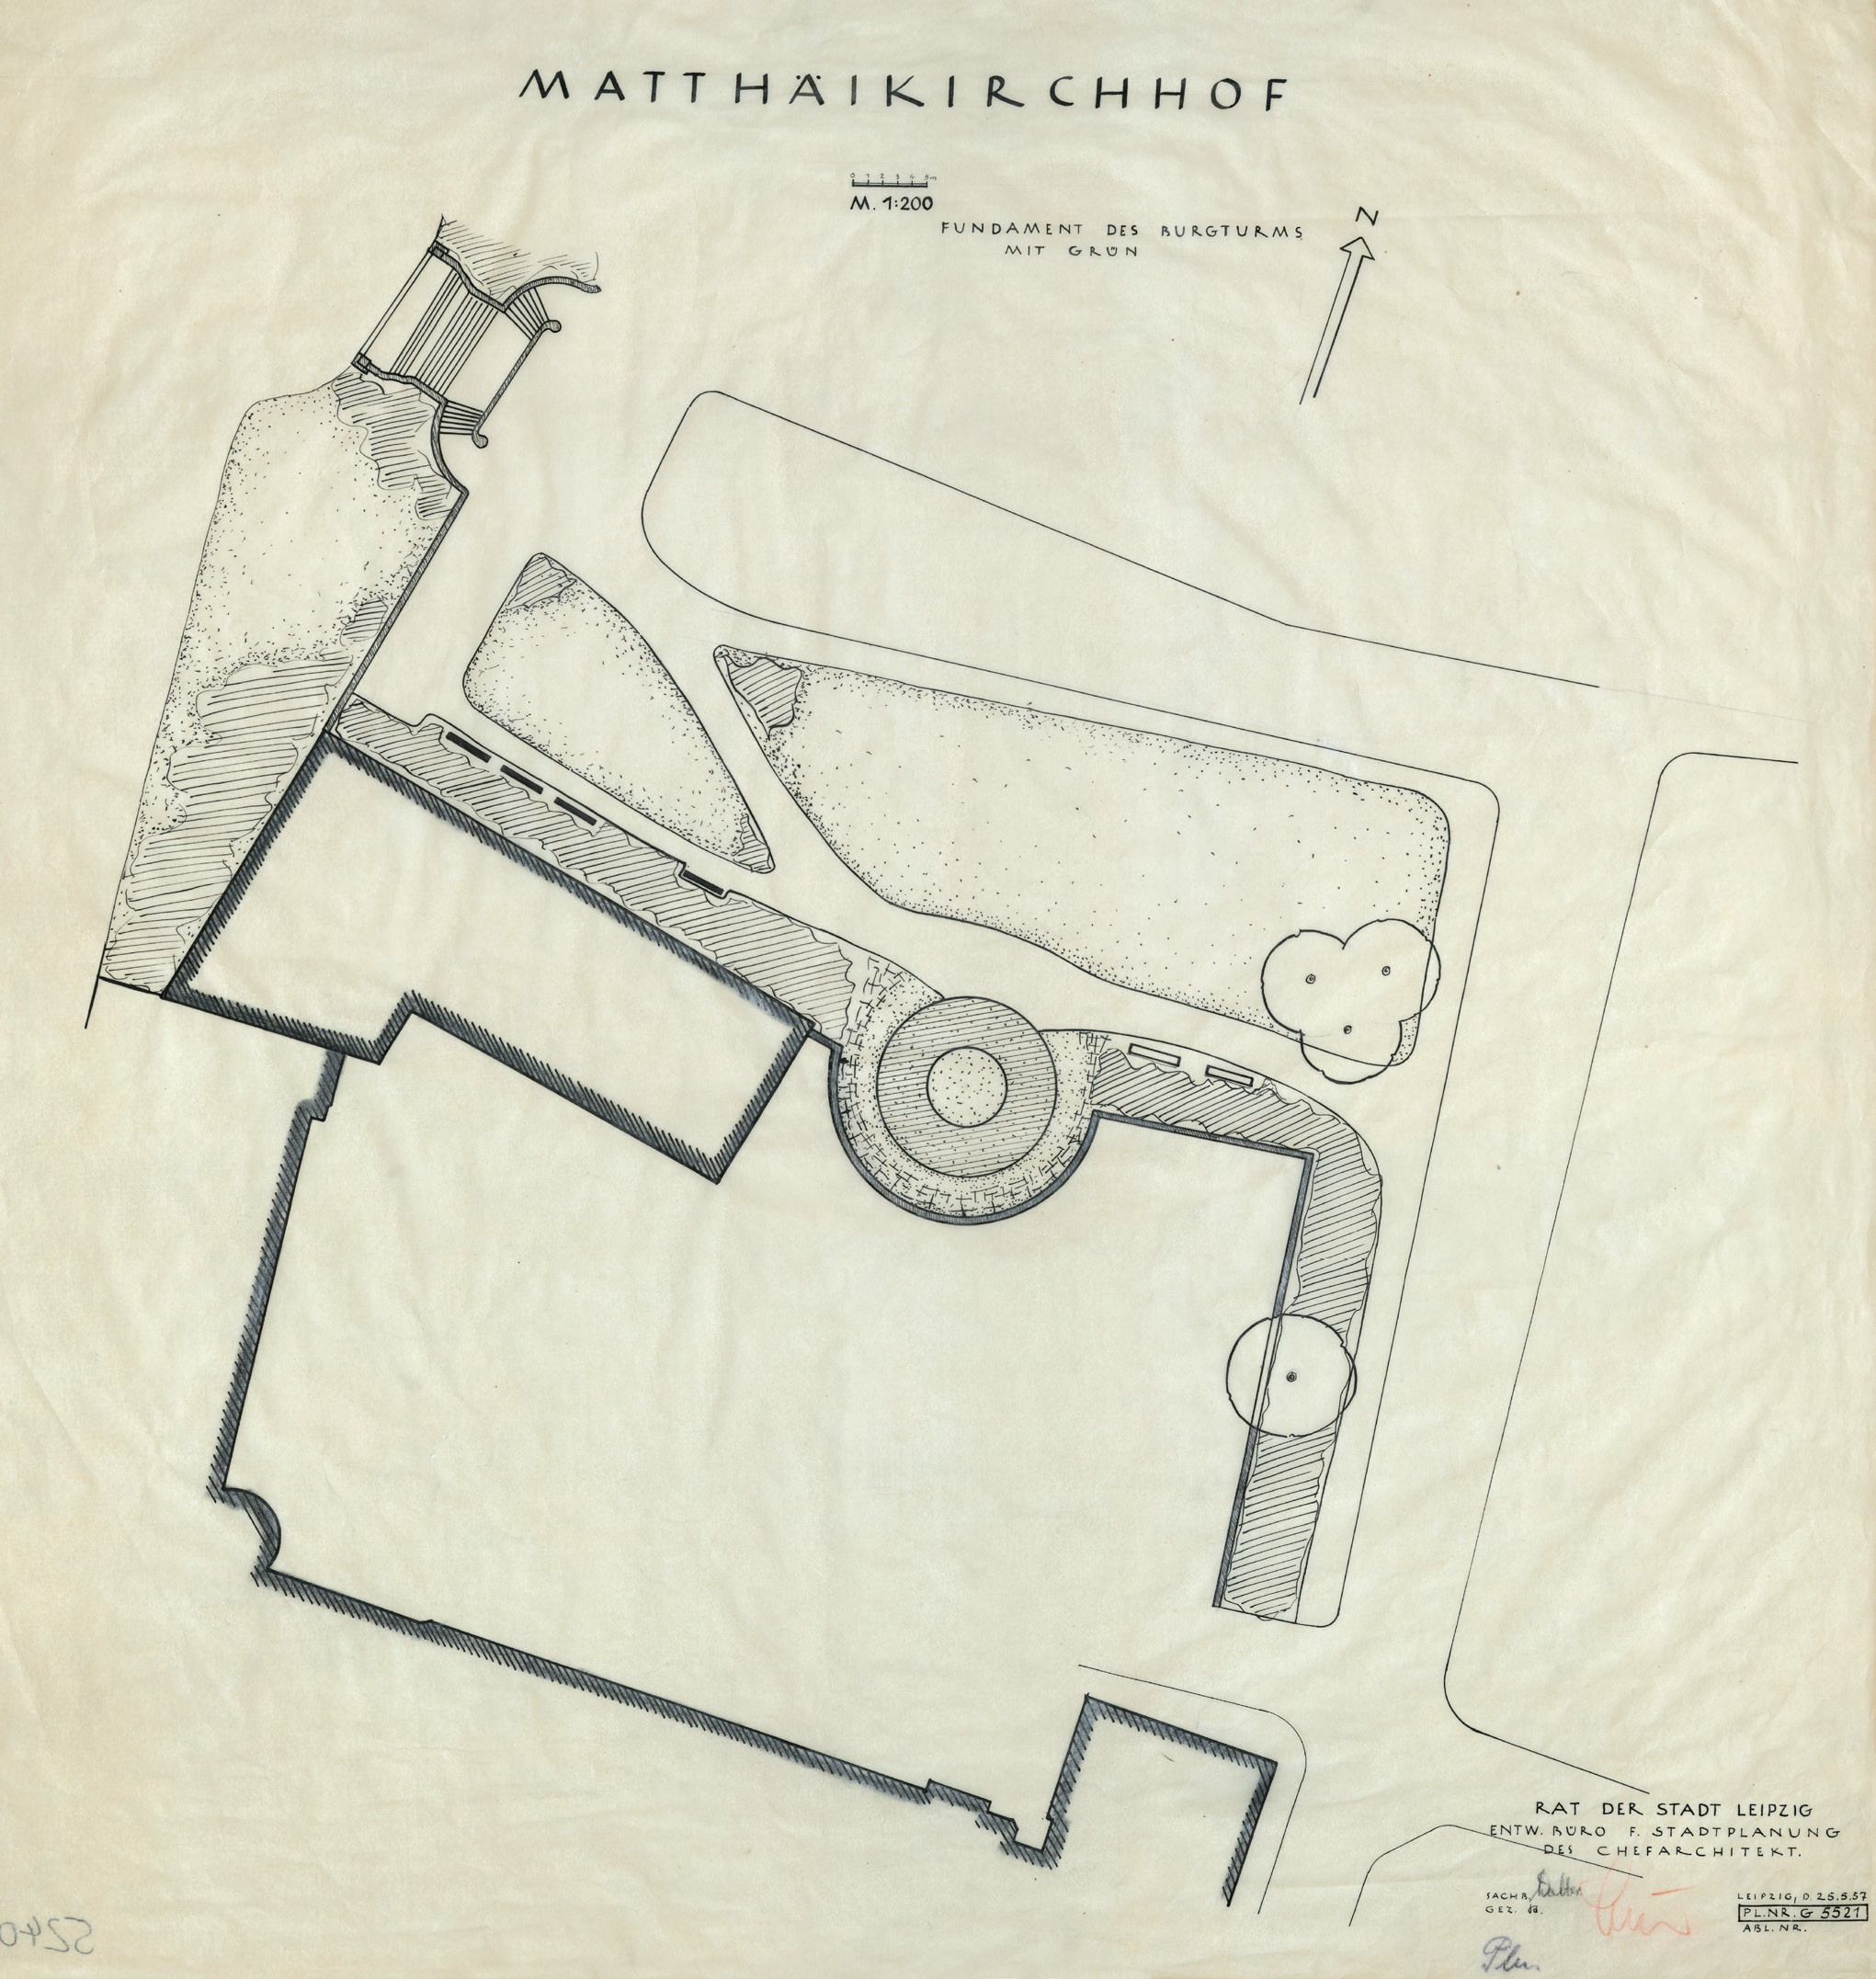 Plan des Matthäikirchhofes mit Präsentation des Turmfundaments des Burgturms im städtebaulichen Kontext vom 25.05.1957 (Stadtarchiv Leipzig, BCA 5240)